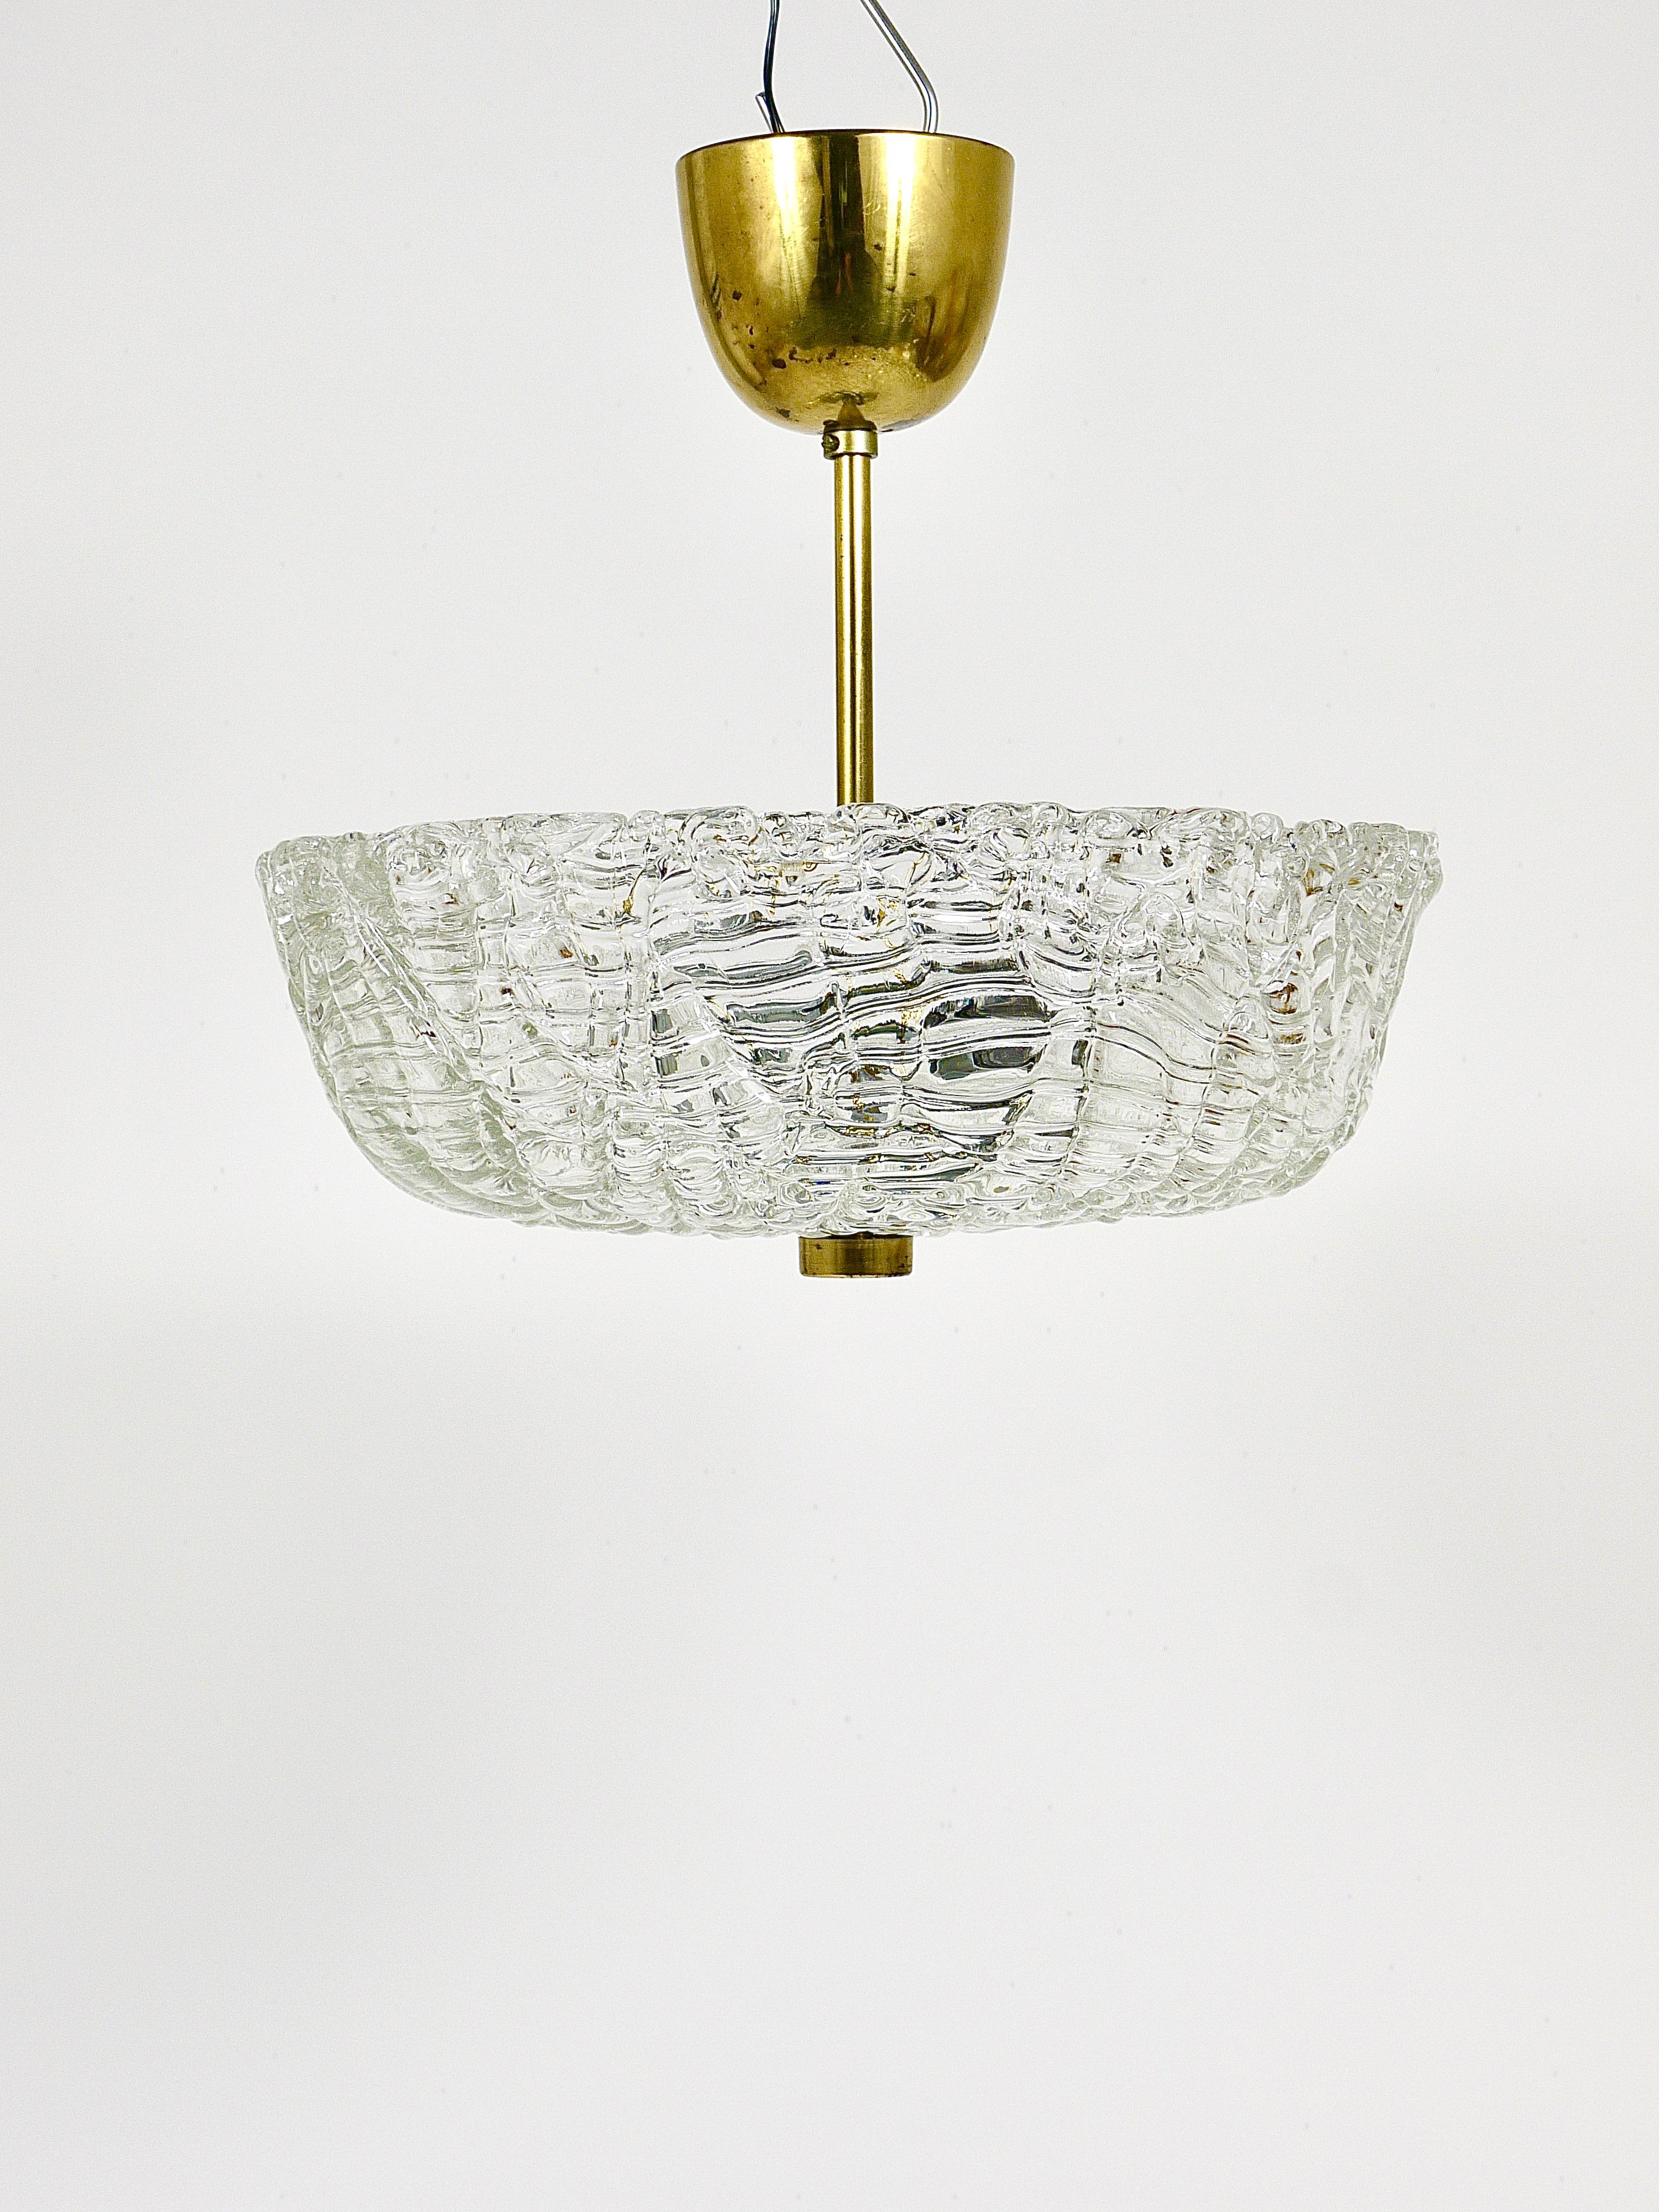 J.T. Kalmar Round Mid-Century Brass & Textured Glass Chandelier, Austria, 1950s For Sale 2